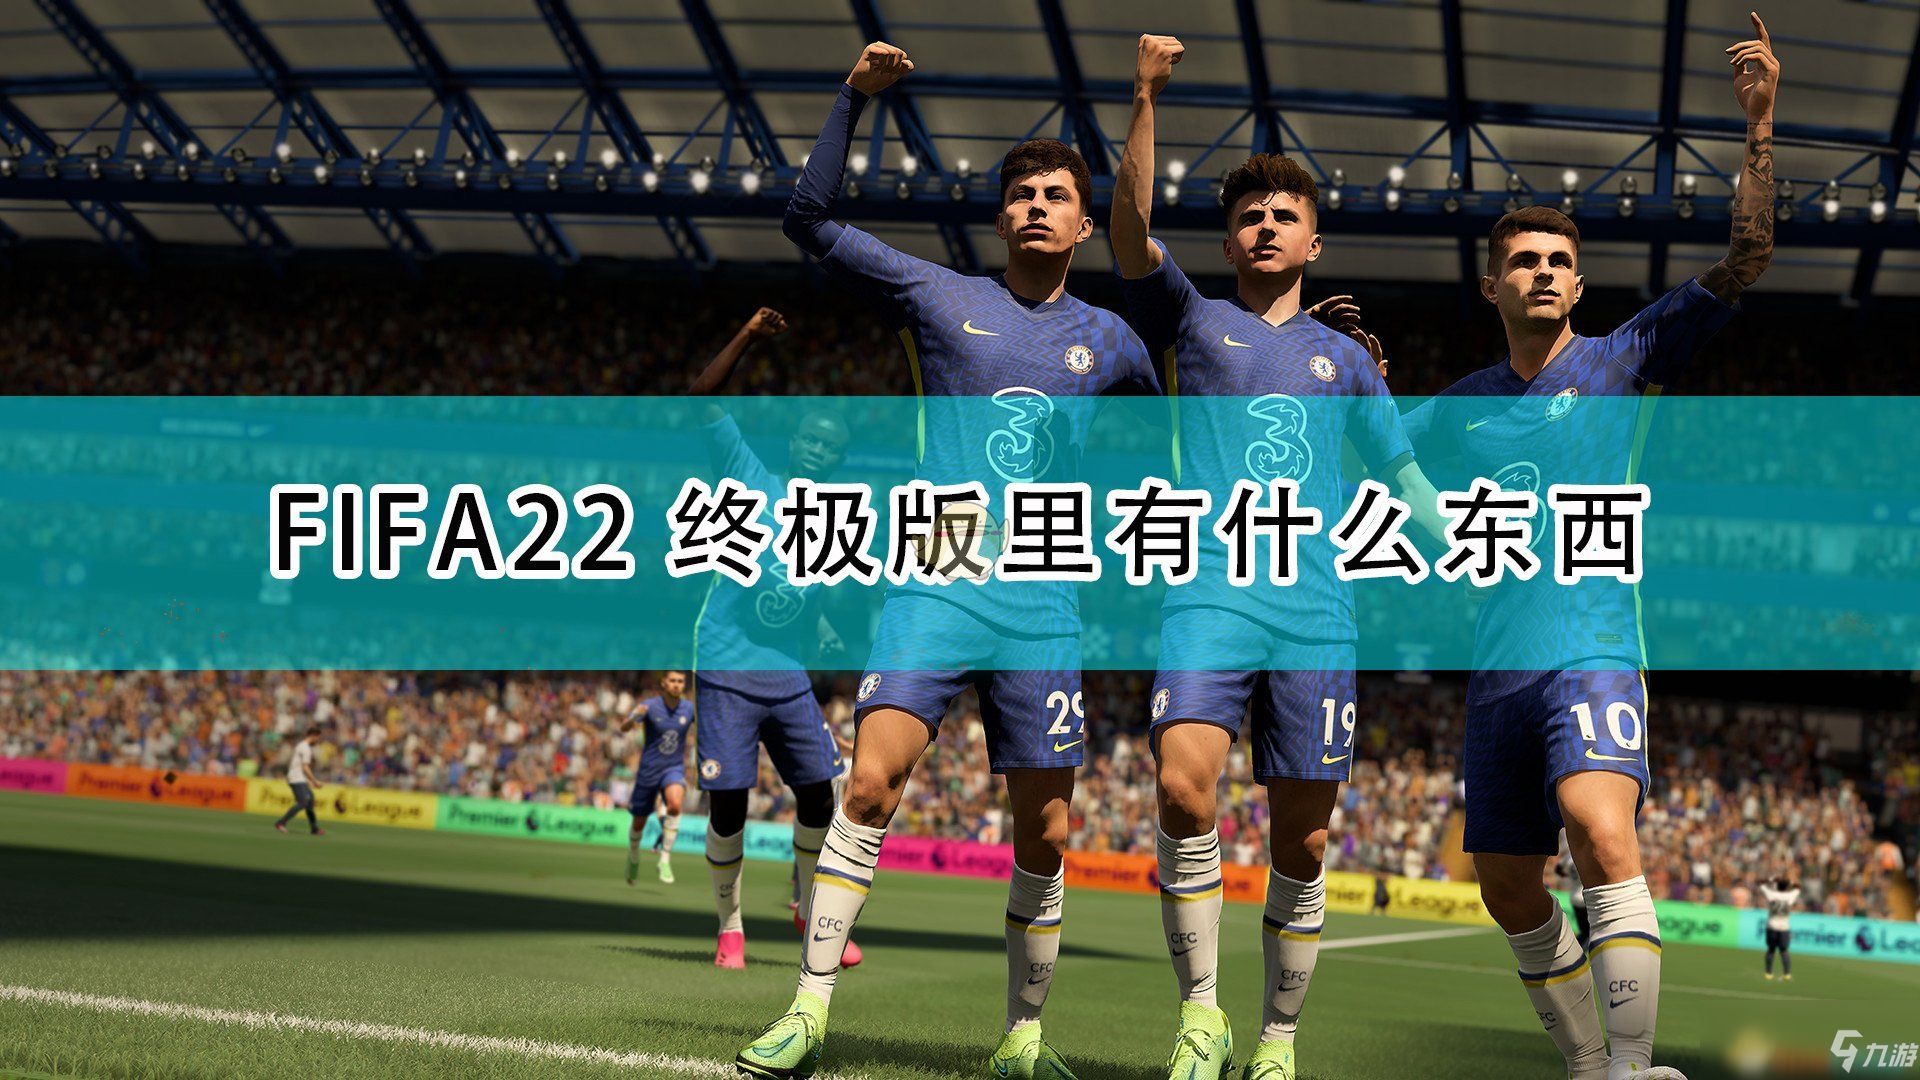 《FIFA22》终极版及限时奖励内容一览